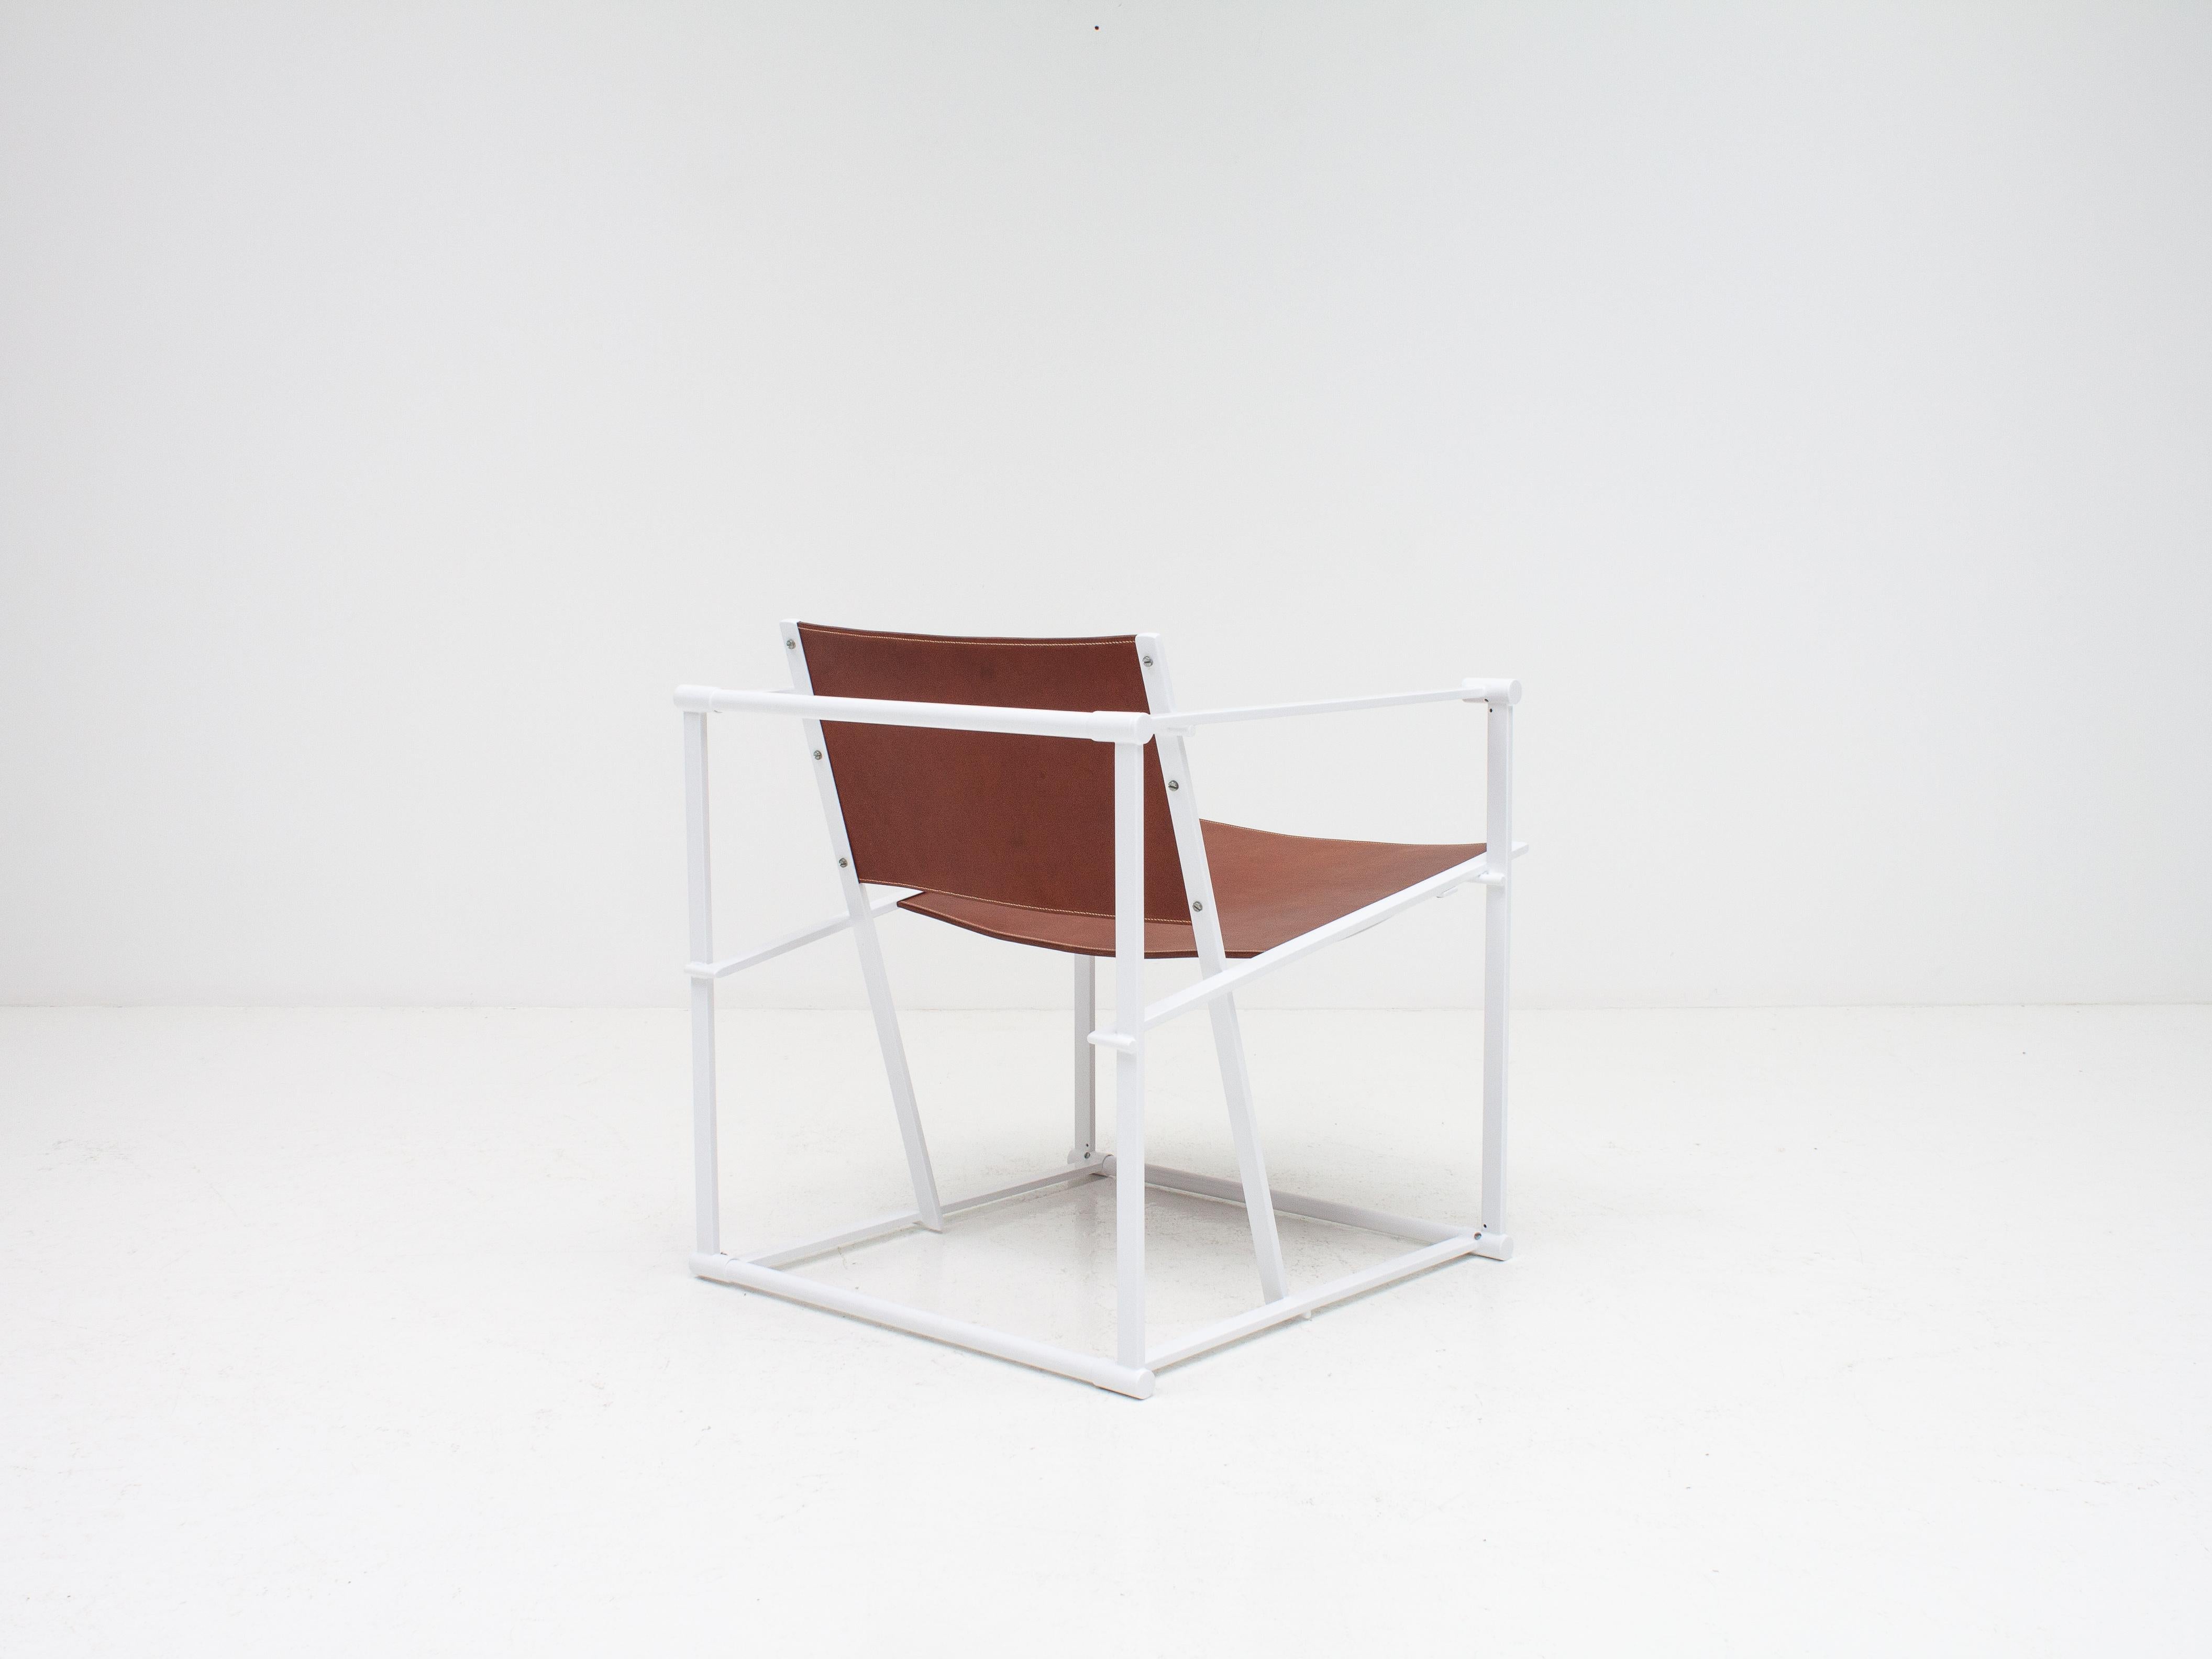 Radboud Van Beekum FM62 Steel & Leather Chair for Pastoe, 1980s 5